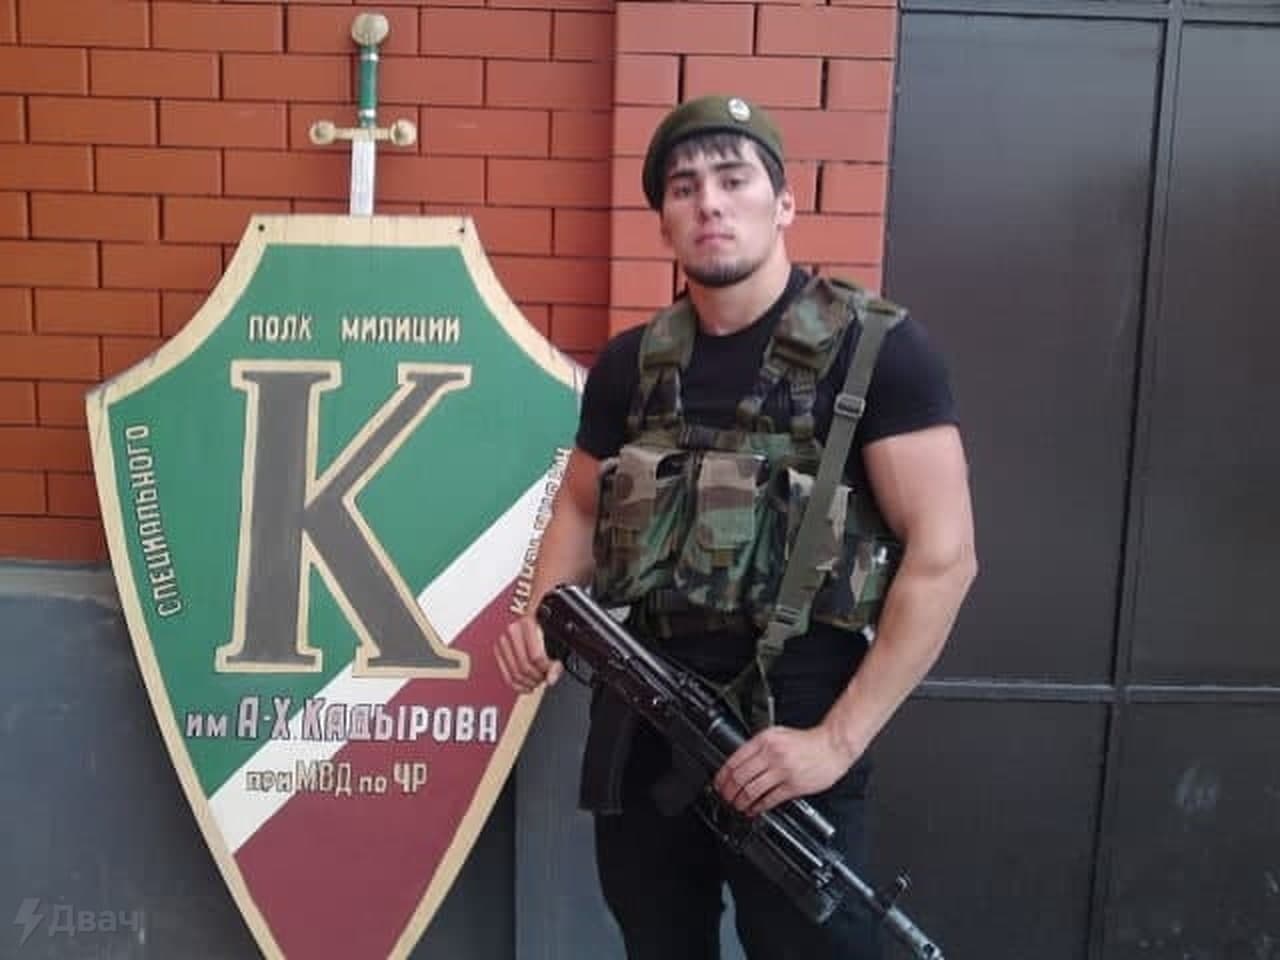 Офицер чеченского спецназа откровенно высказался о гражданах РФ: "Мы вас так с детства называли"